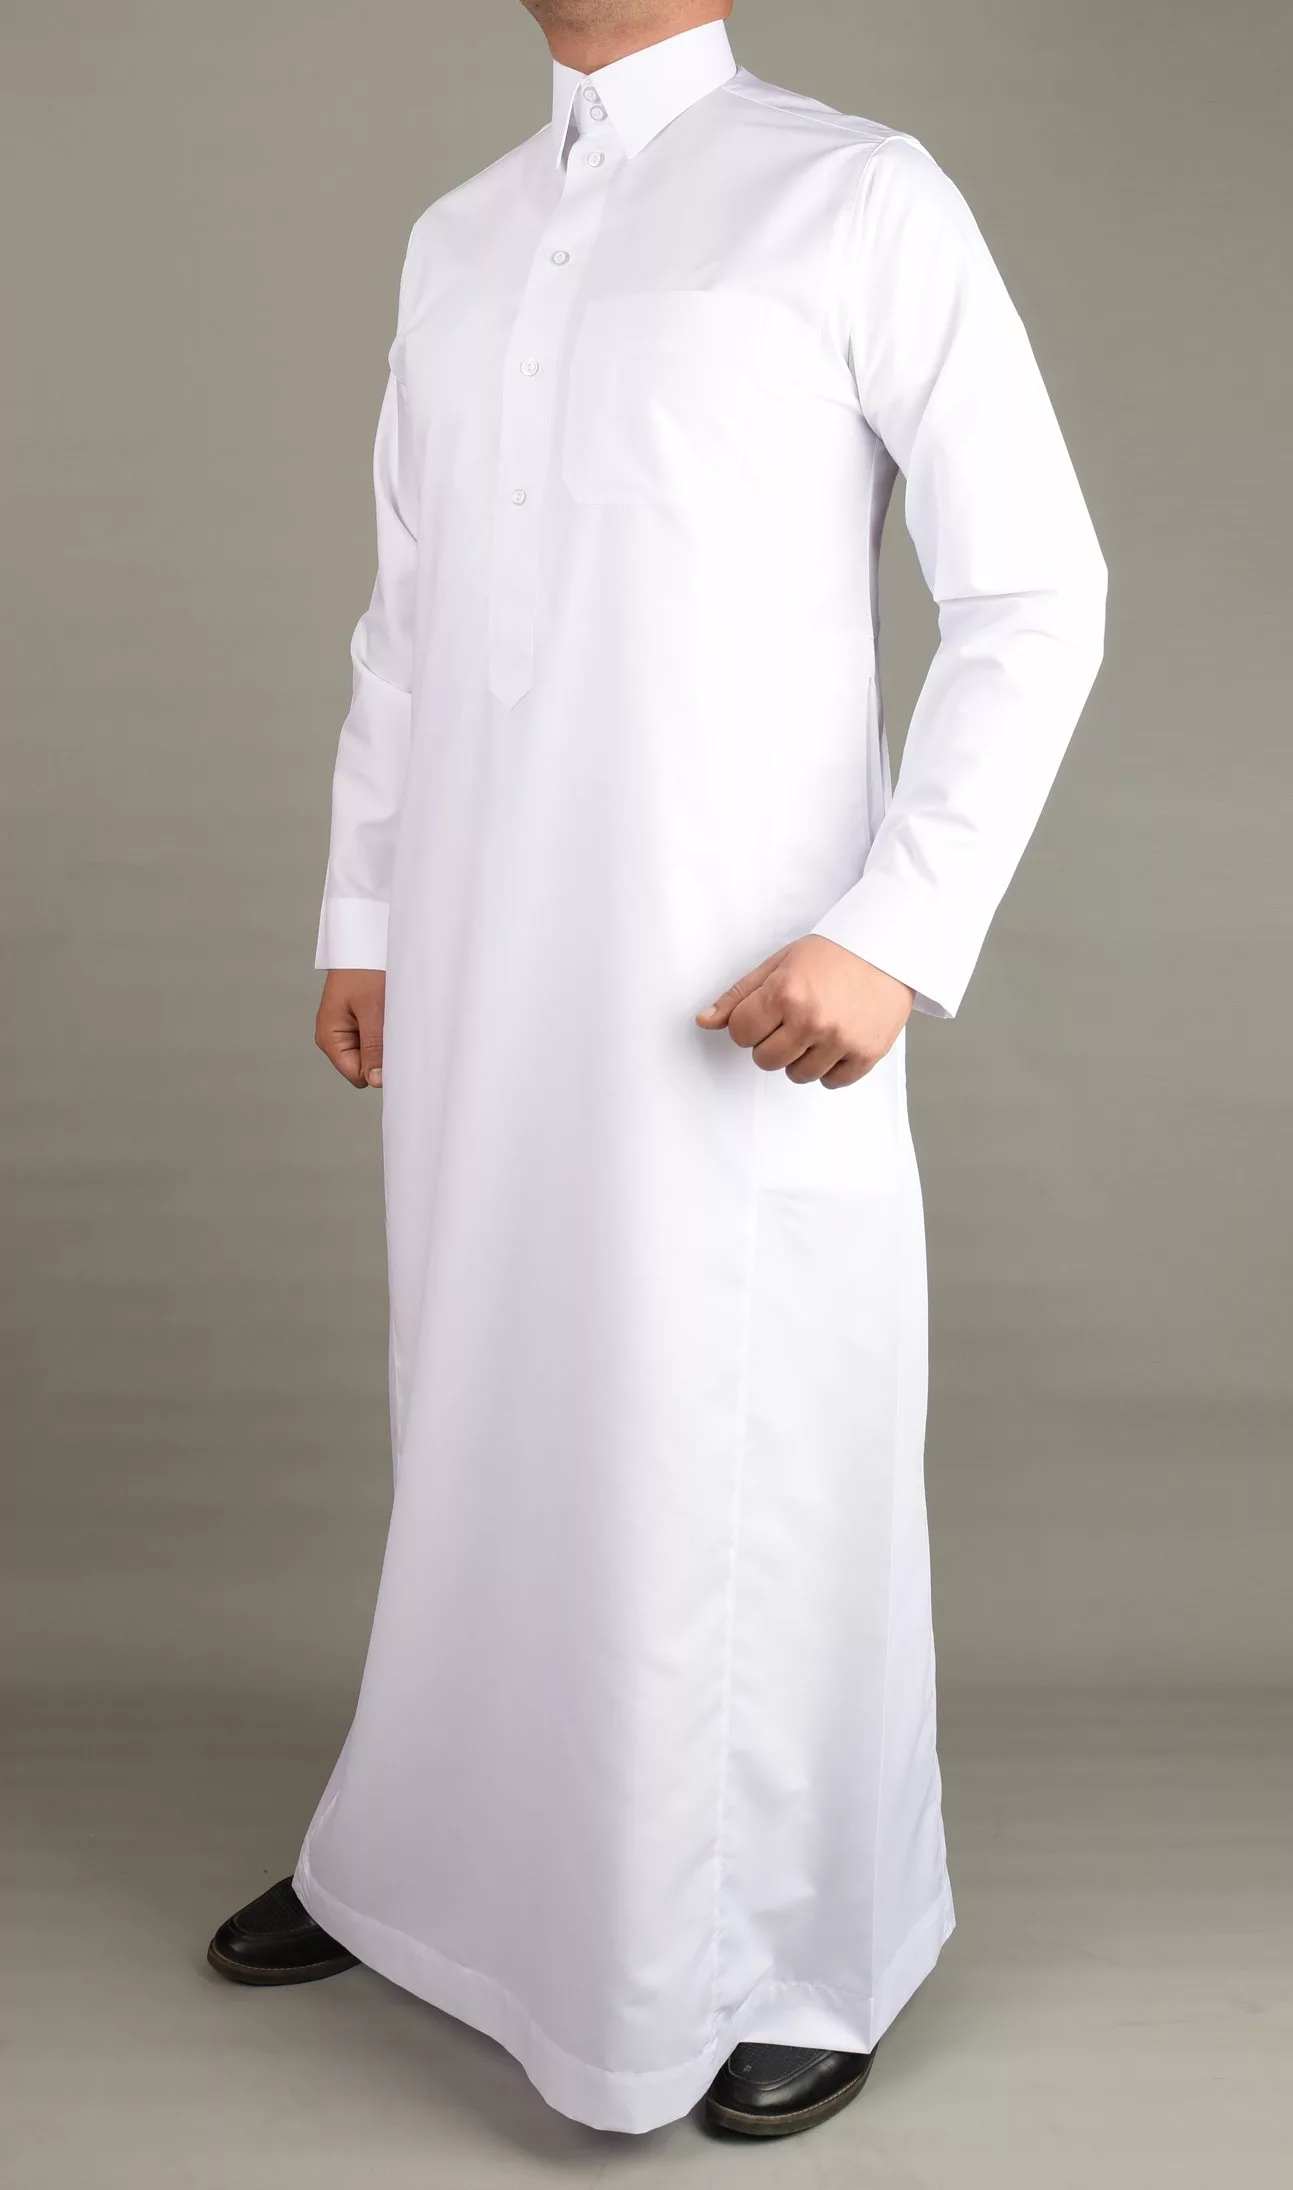 السعودية تعلن عن عقوبة قاسية لكل أجنبي يلبس الثوب السعودي!